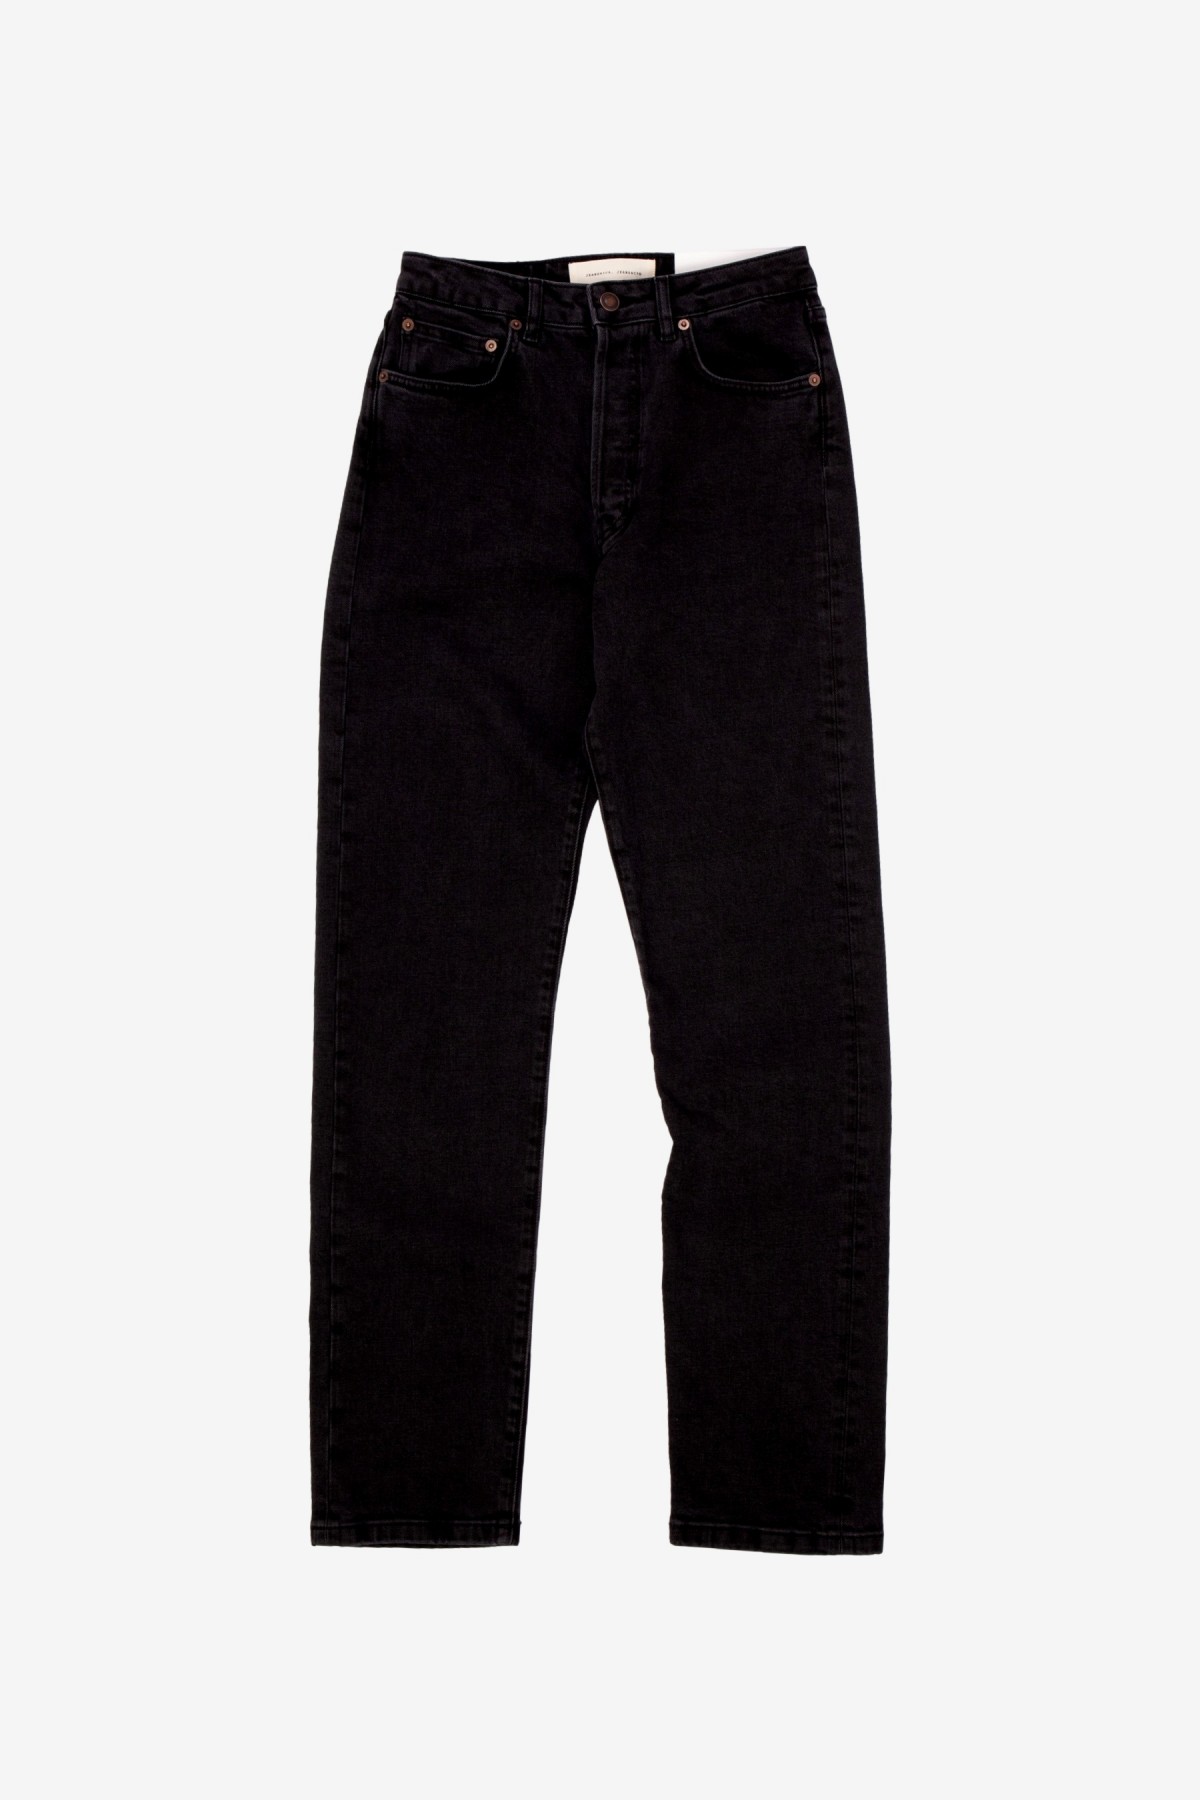 Jeanerica BW001 Boy Jeans in Black 2 Weeks